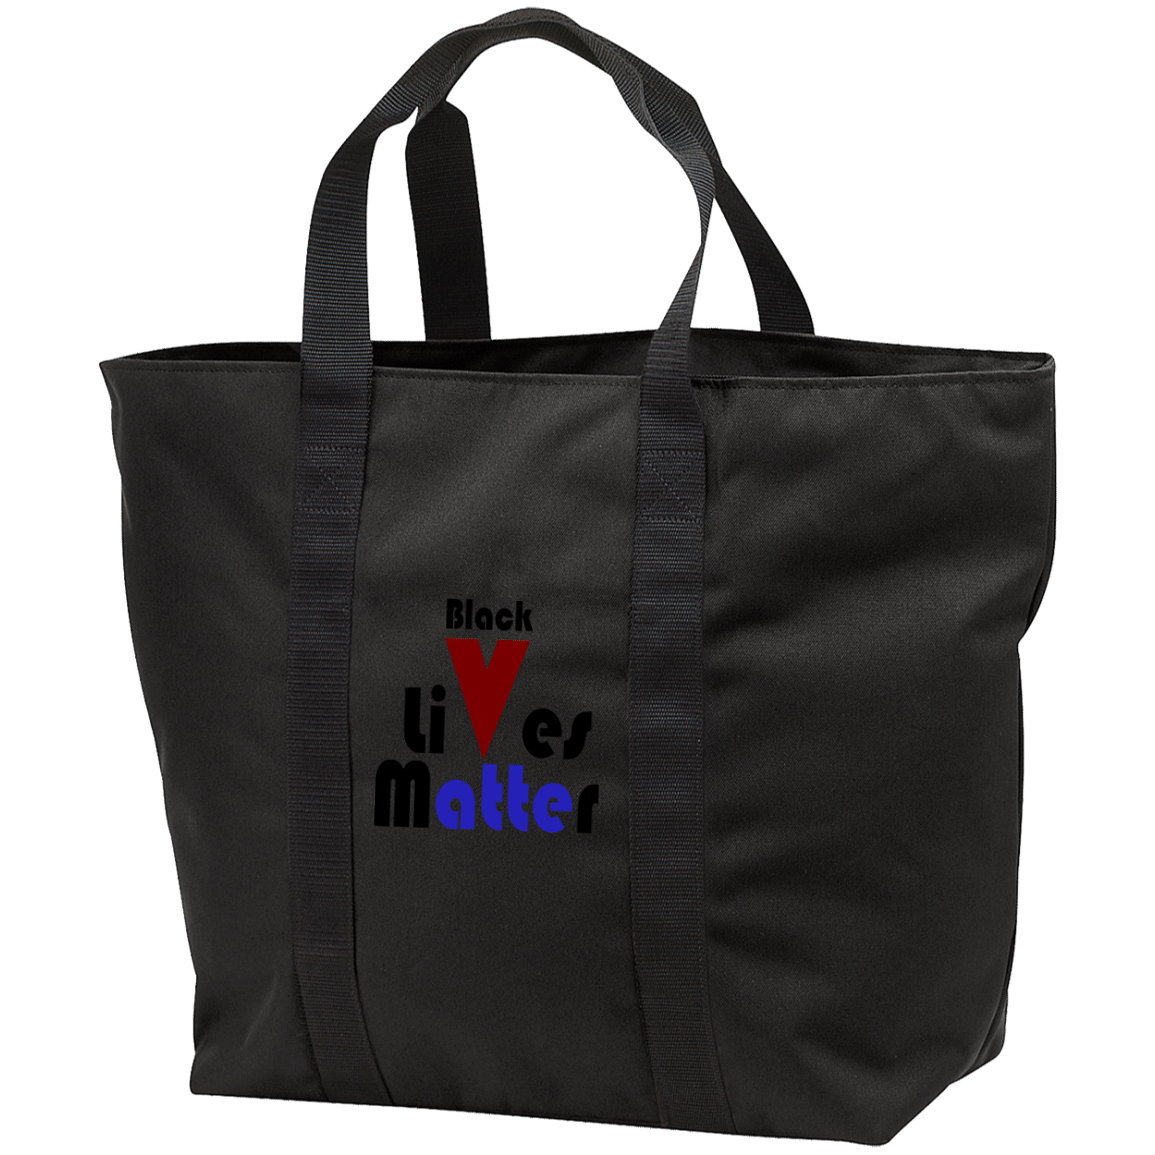 B5000 All Purpose Tote Bag